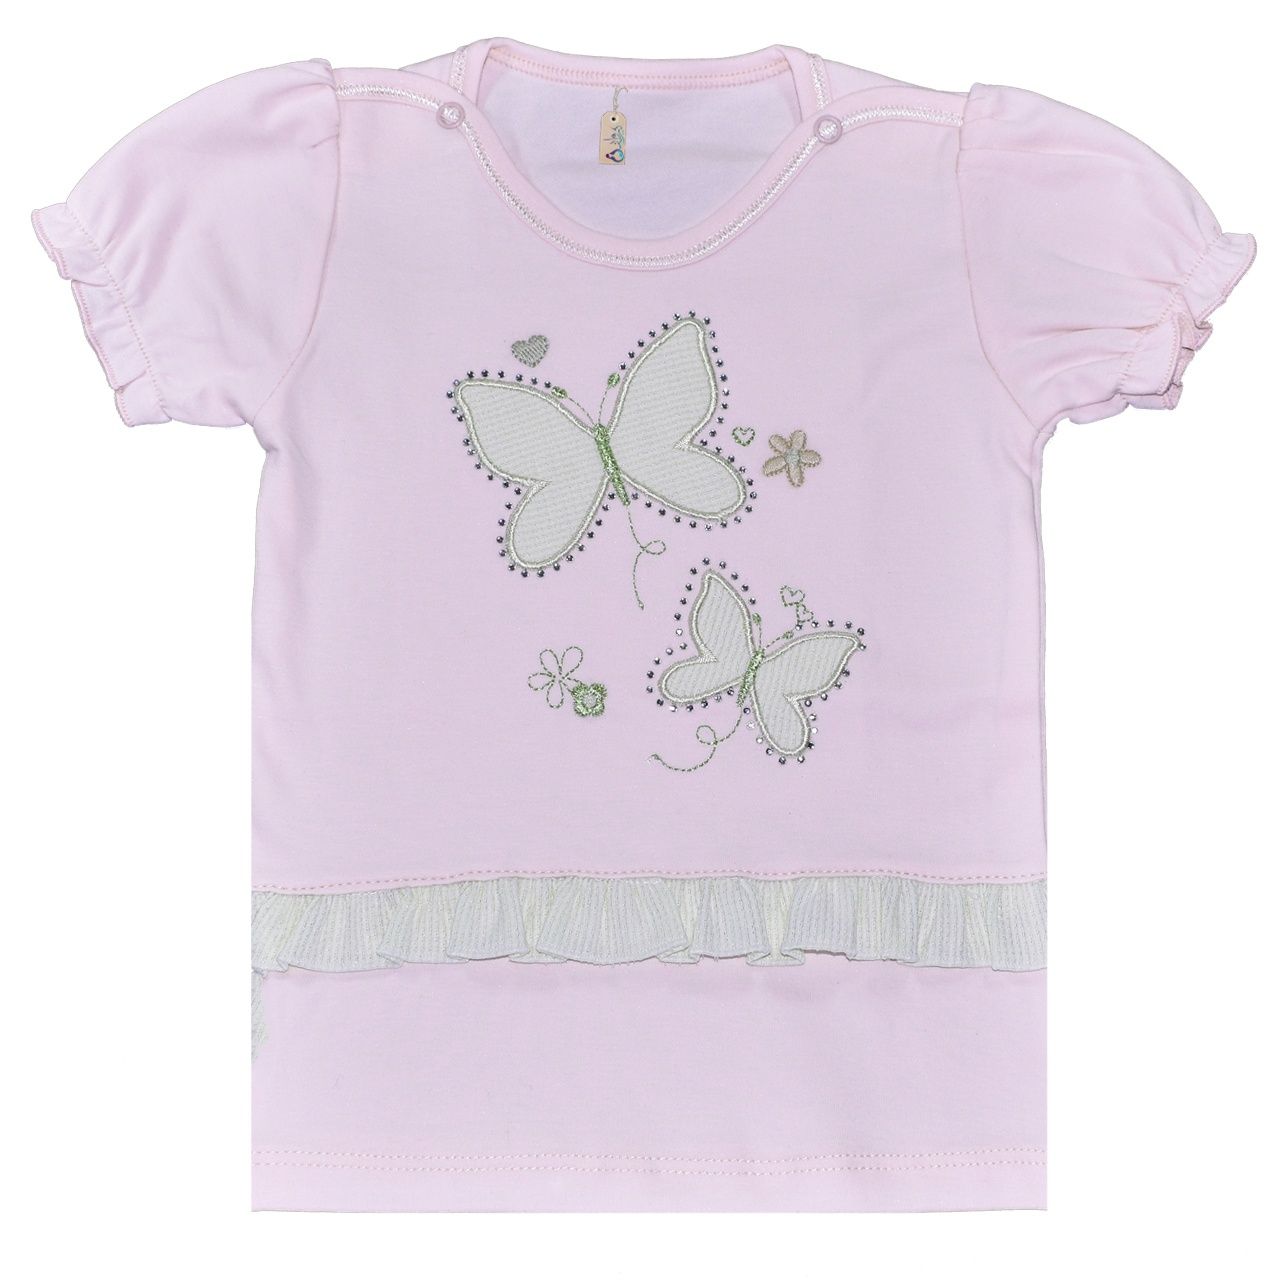 تی شرت نوزادی نیروان طرح پروانه -  - 1